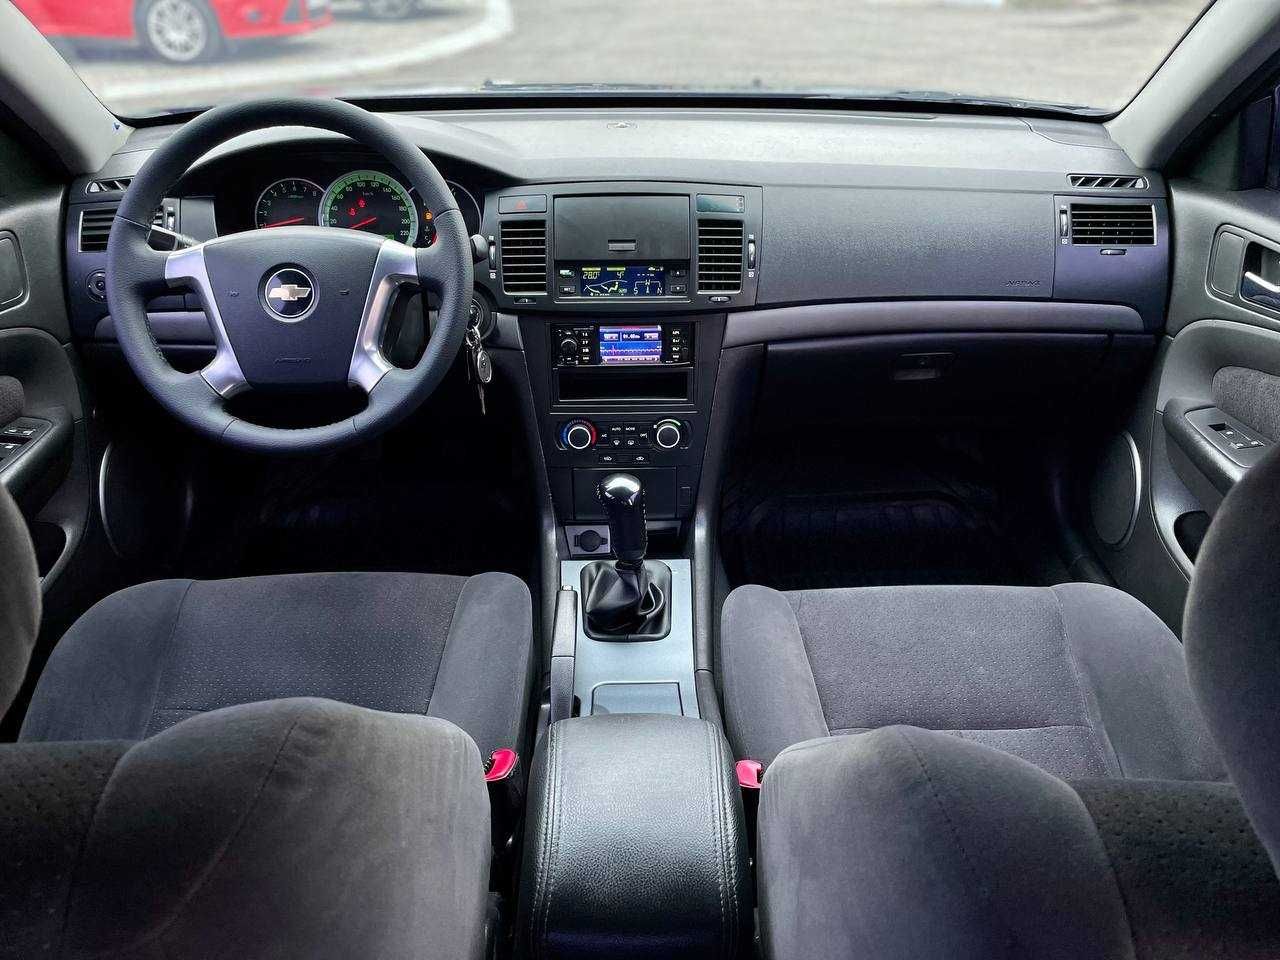 Продажа в кредит, Chevrolet Epica 2008 года,на газу 4 поколения.